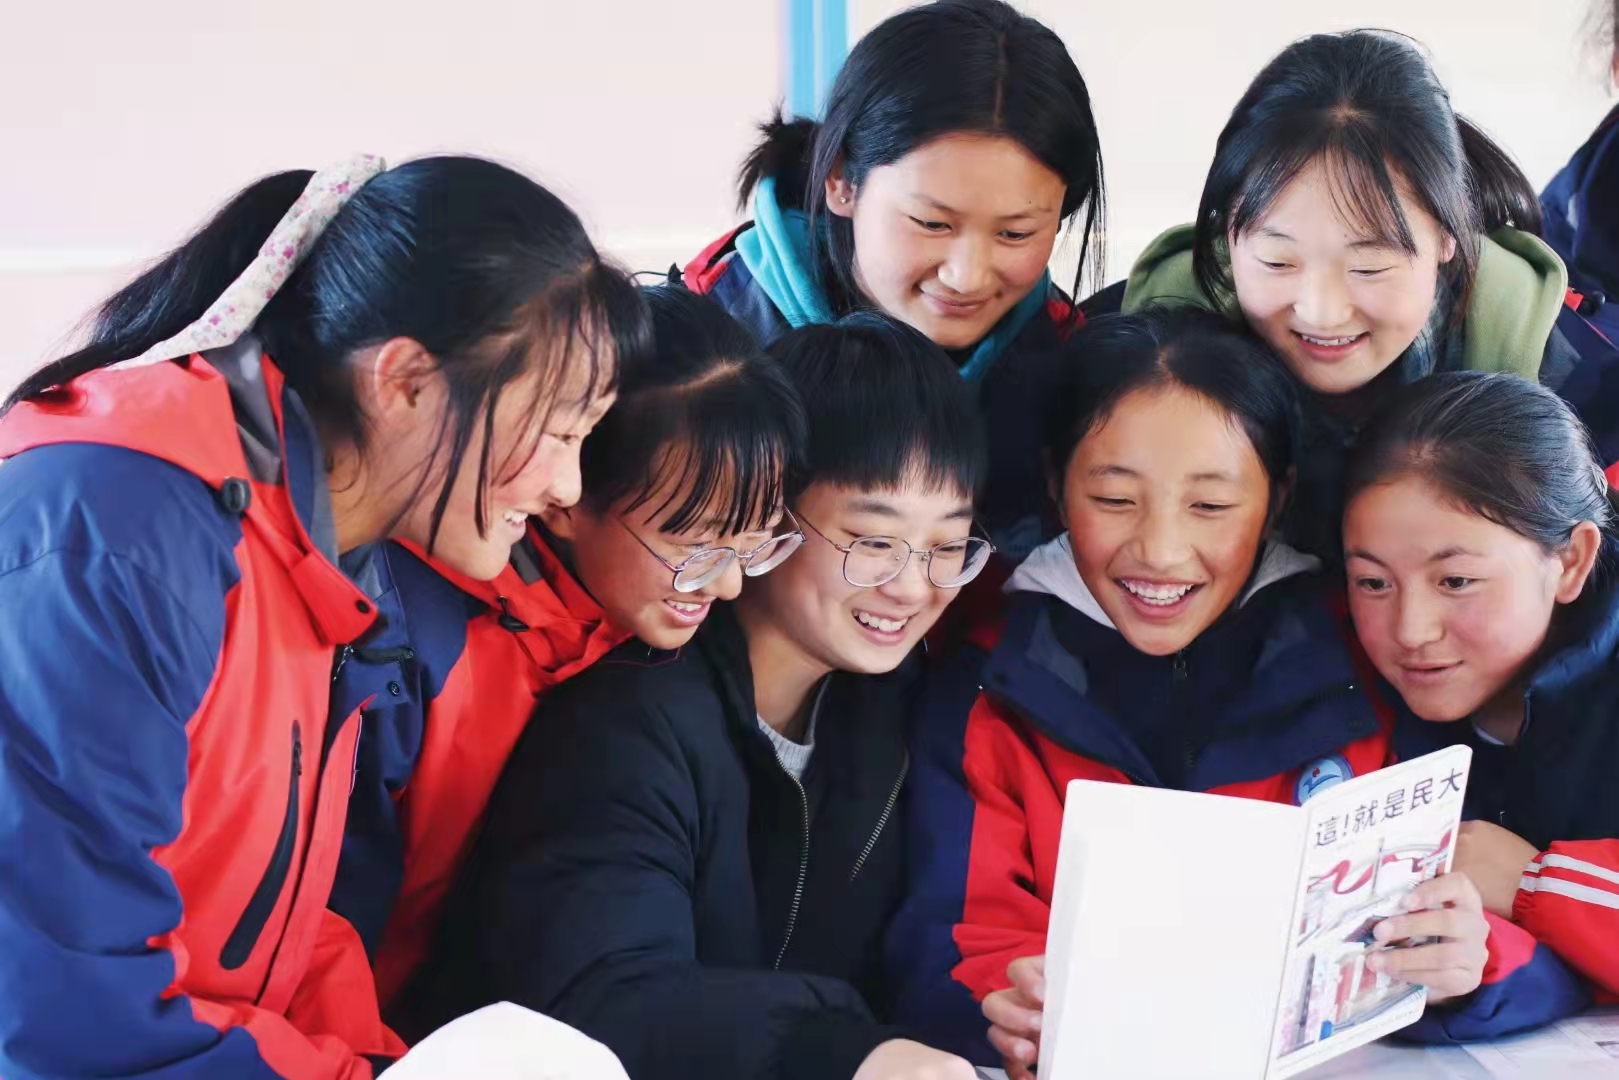 西南民族大学“格桑花”研究生支教团荣获第十三届中国青年志愿者优秀组织奖